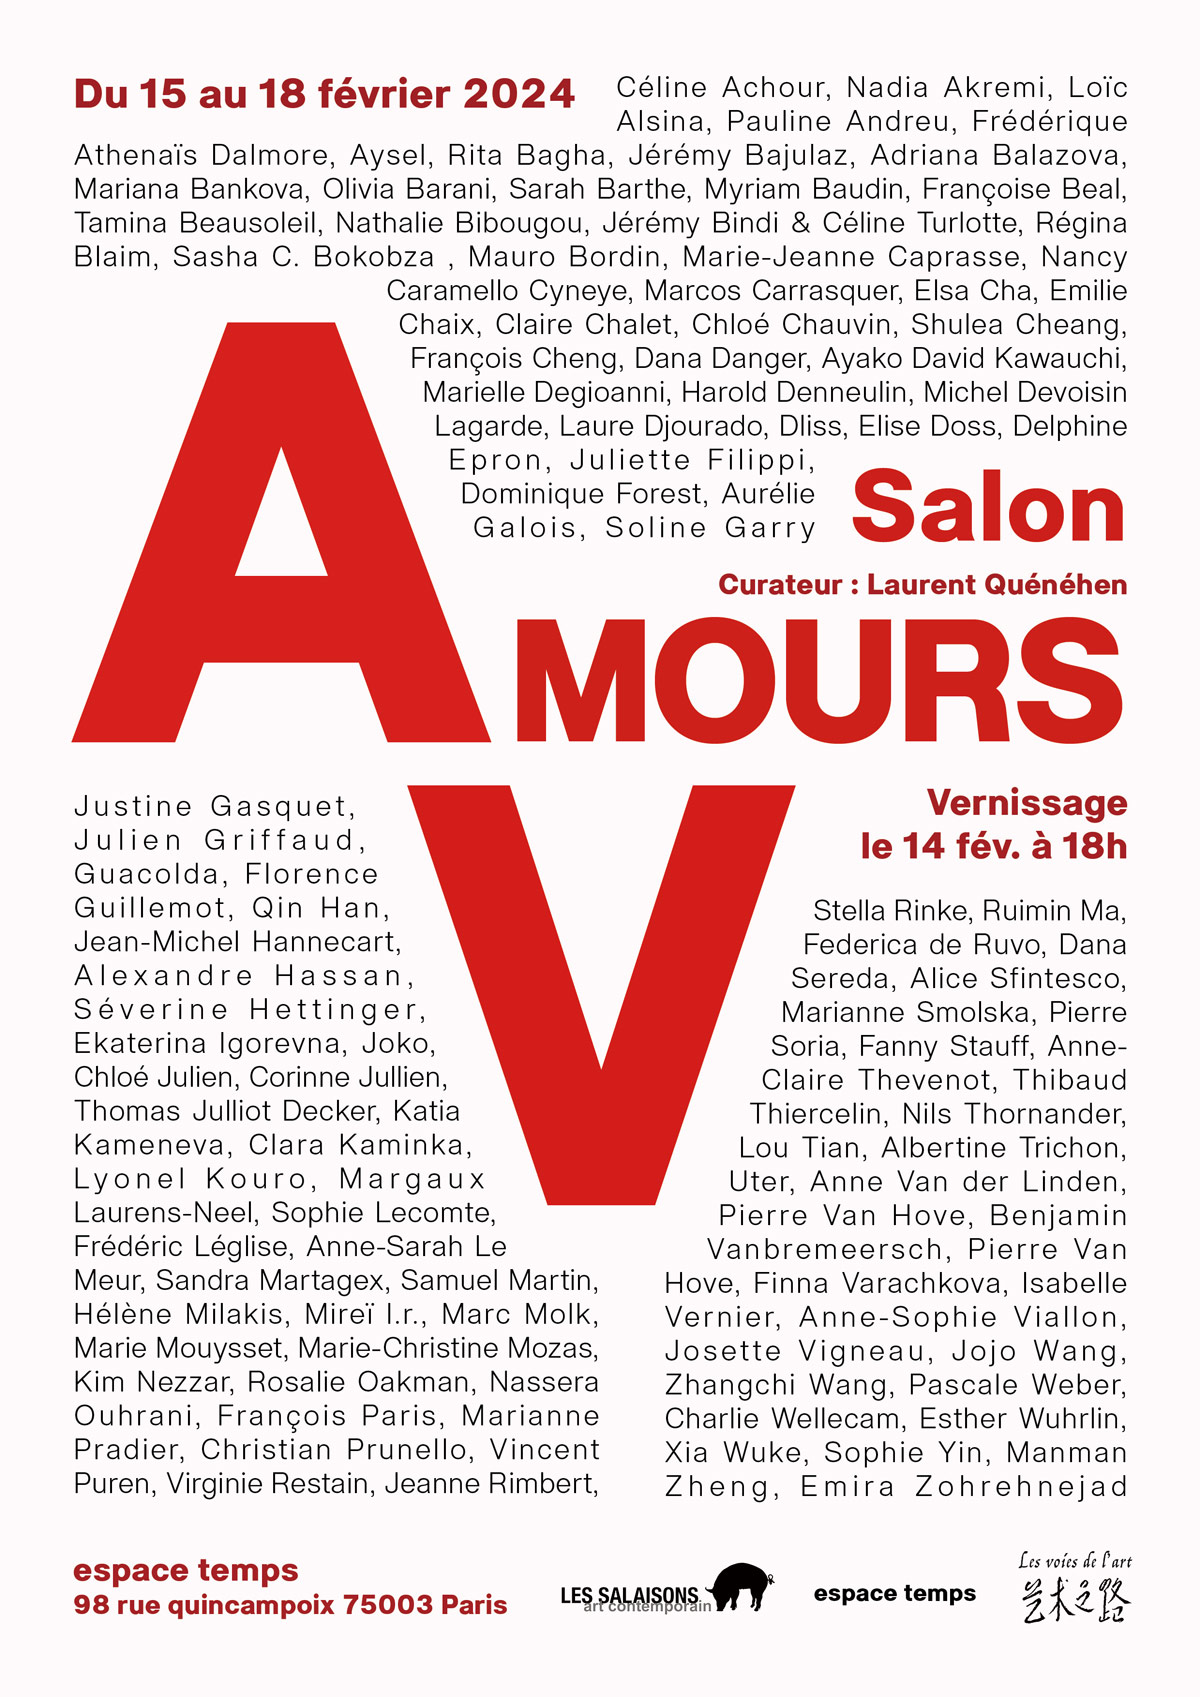 Salon Amours V, galerie Espace Temps, Paris. par Charlie Wellecam